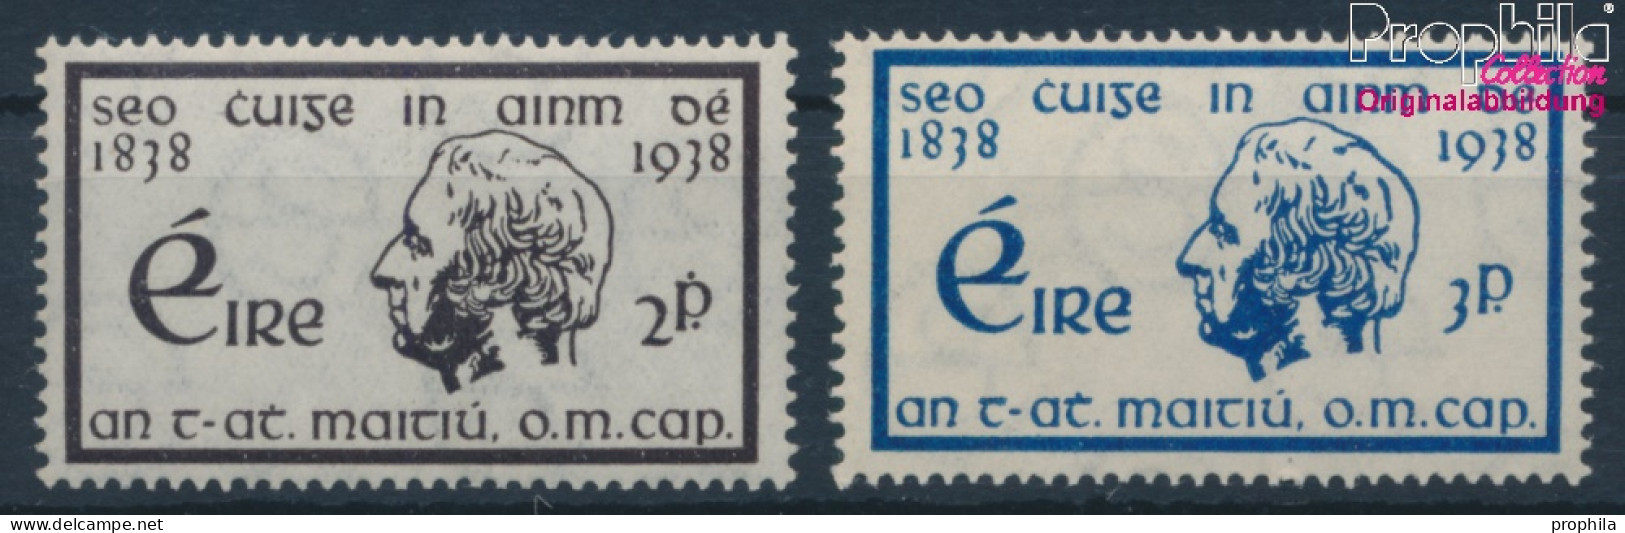 Irland Postfrisch Enthasltsamkeit 1938 Enthaltsamkeit  (10398324 - Unused Stamps